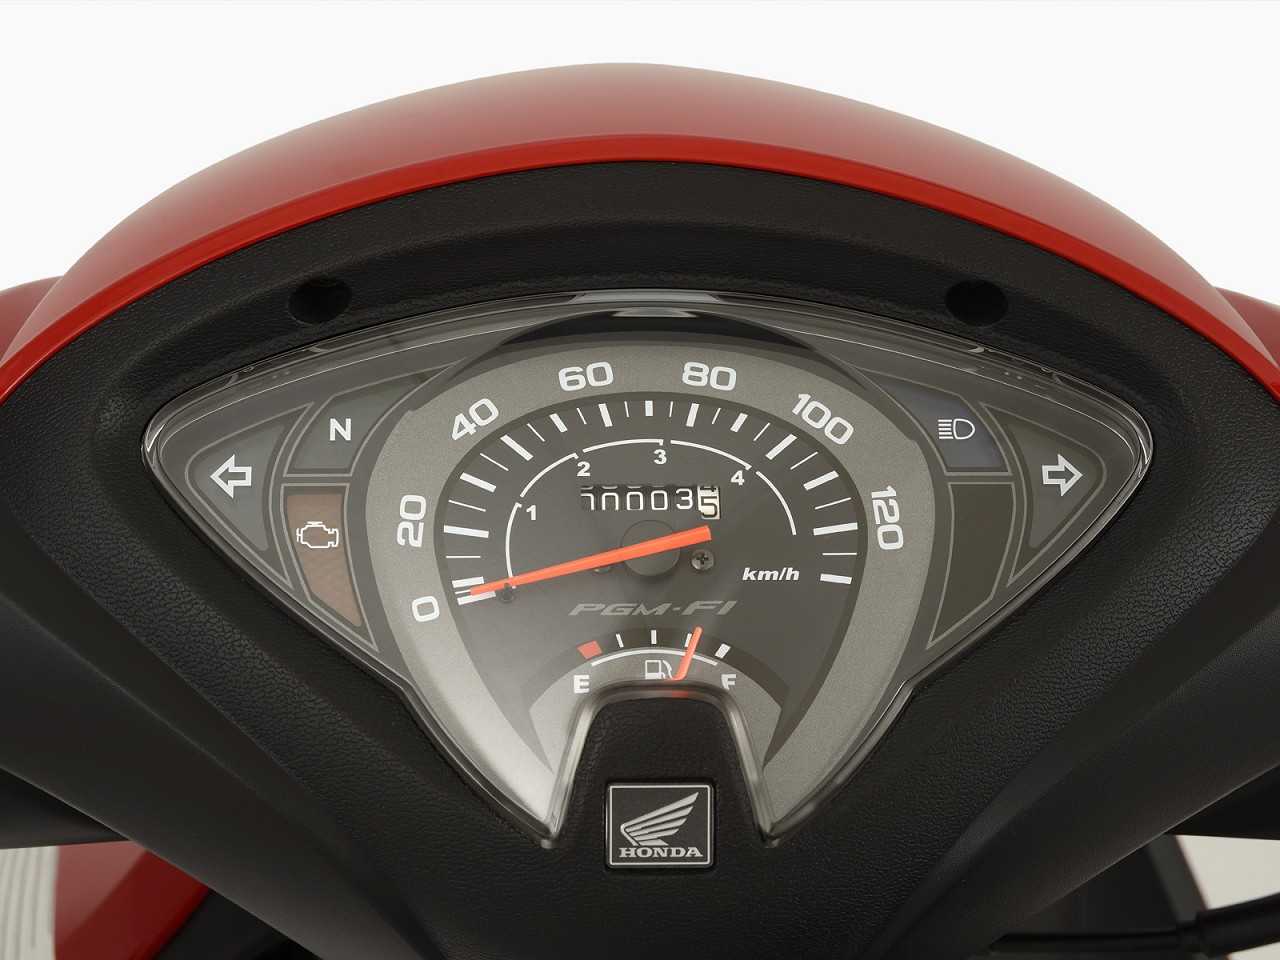 HondaBiz 110i 2016 - painel